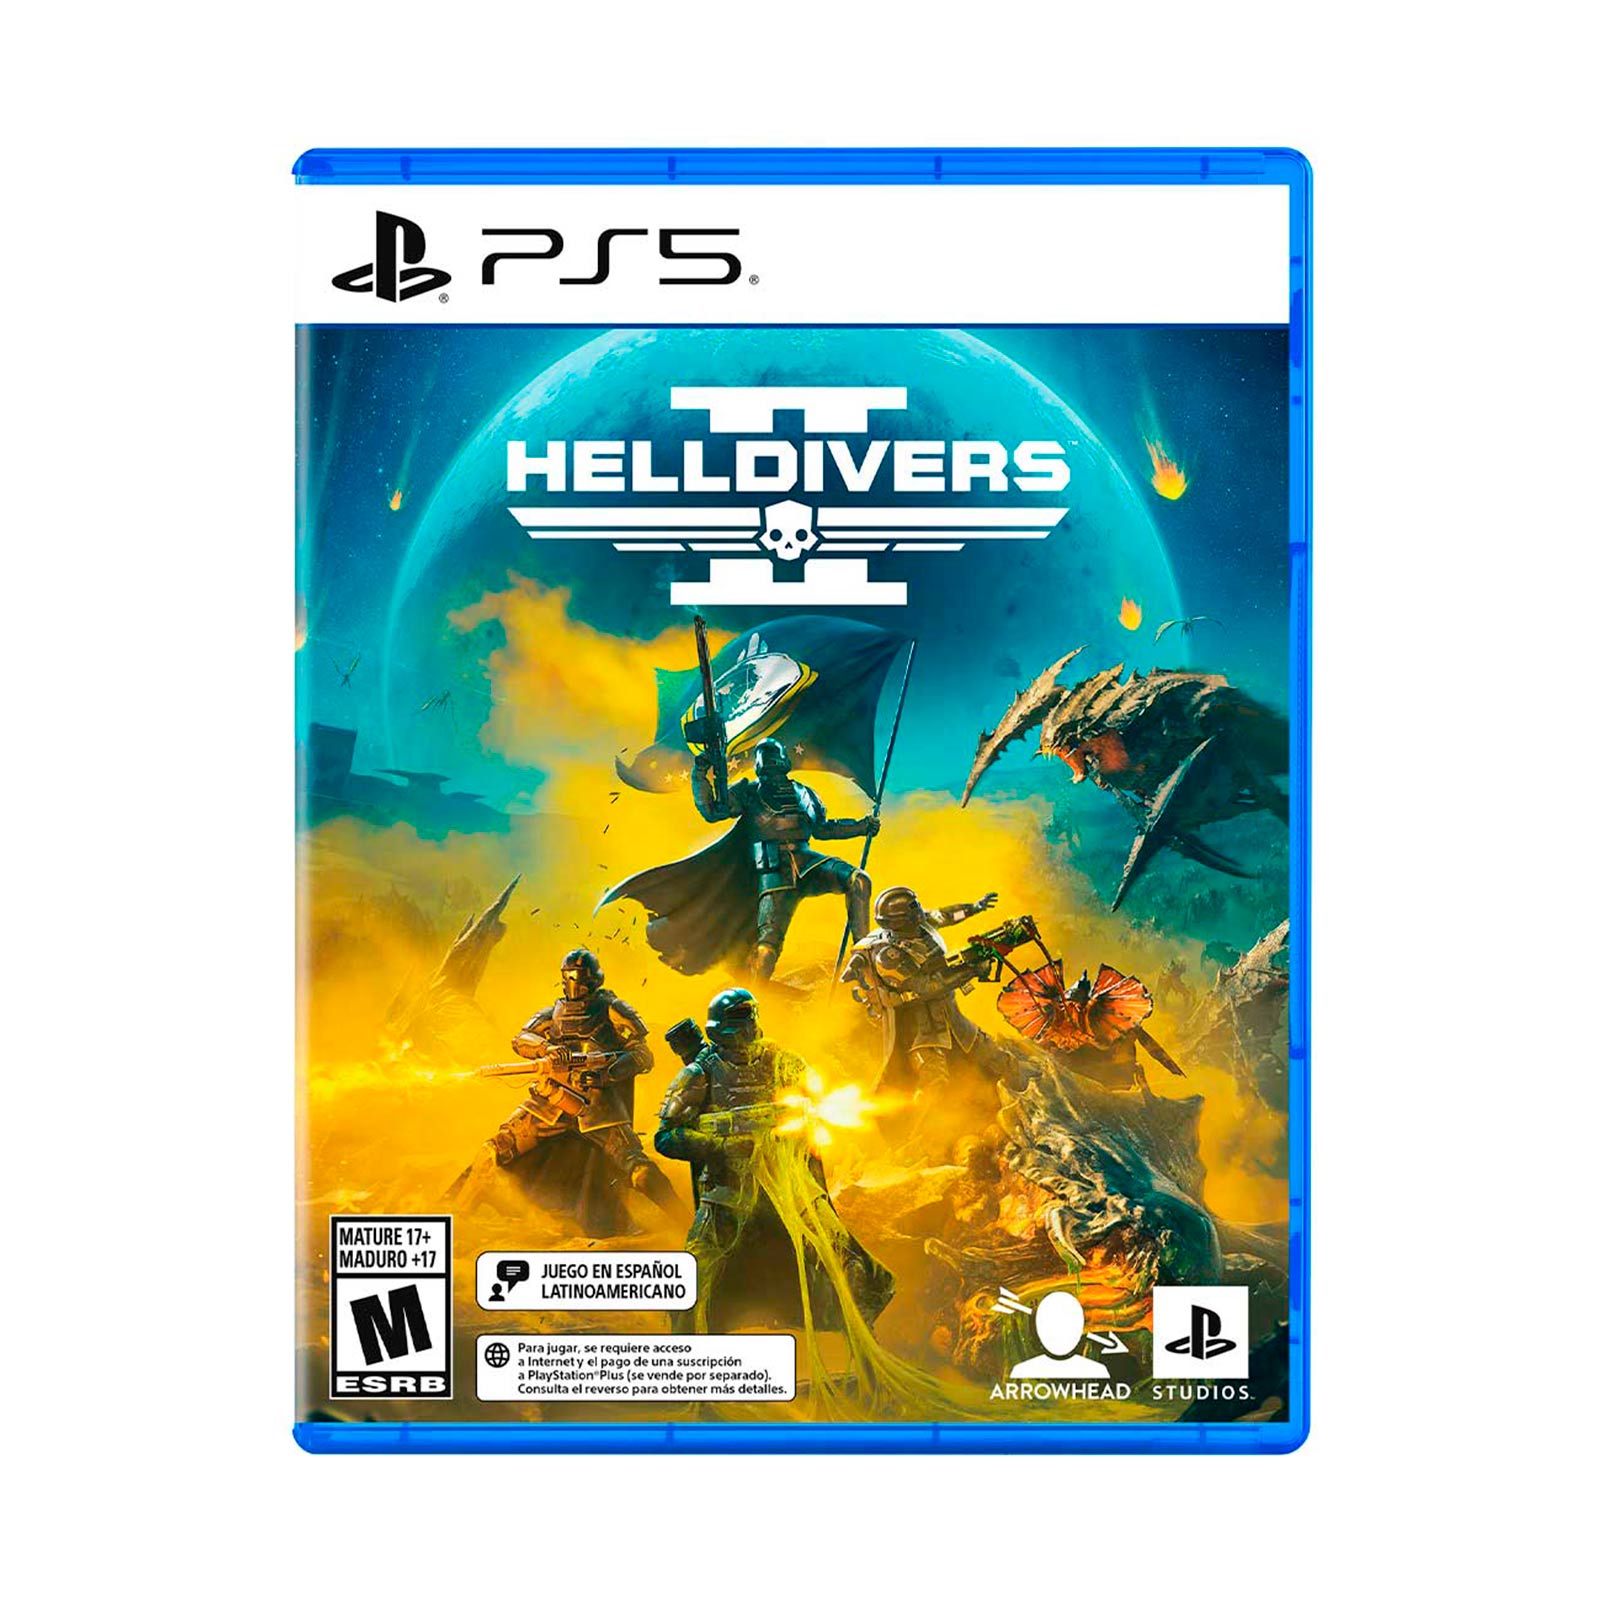 Todojuegos.cl - Lanzamiento Confirmado Helldivers 2 Playstation 5 Revisalo  aca…  #Helldivers2 #play5 #lanzamiento #todojuegos  #Arrowhead